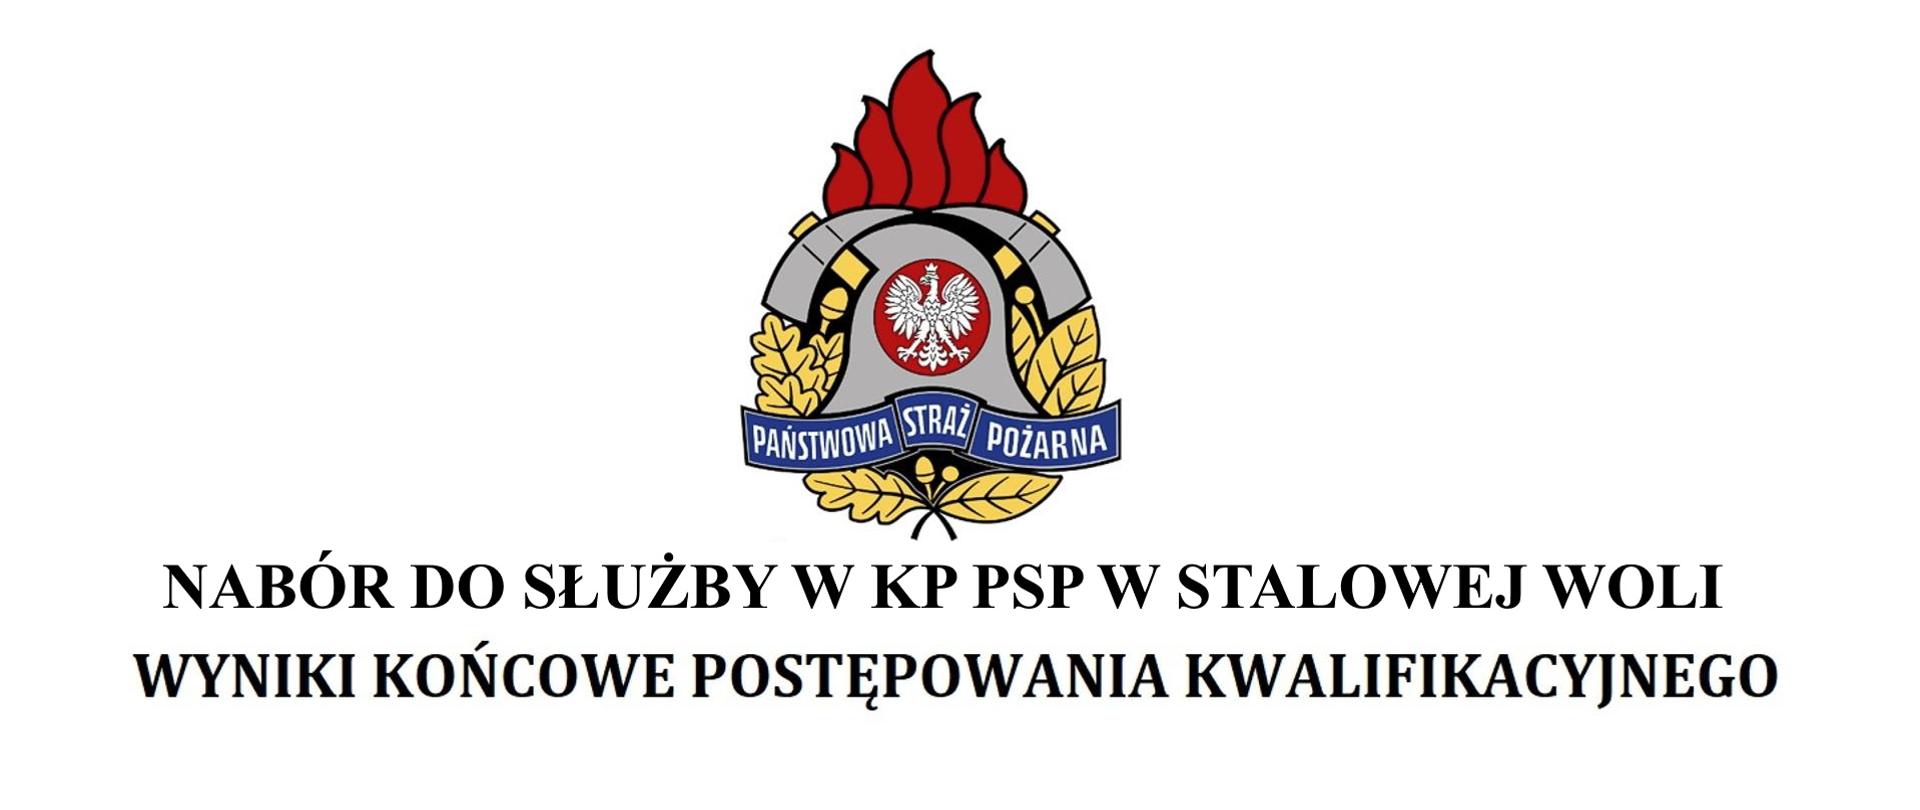 Wyniki ostatniego etapu kwalifikacyjnego do służby w KP PSP w Stalowej Woli